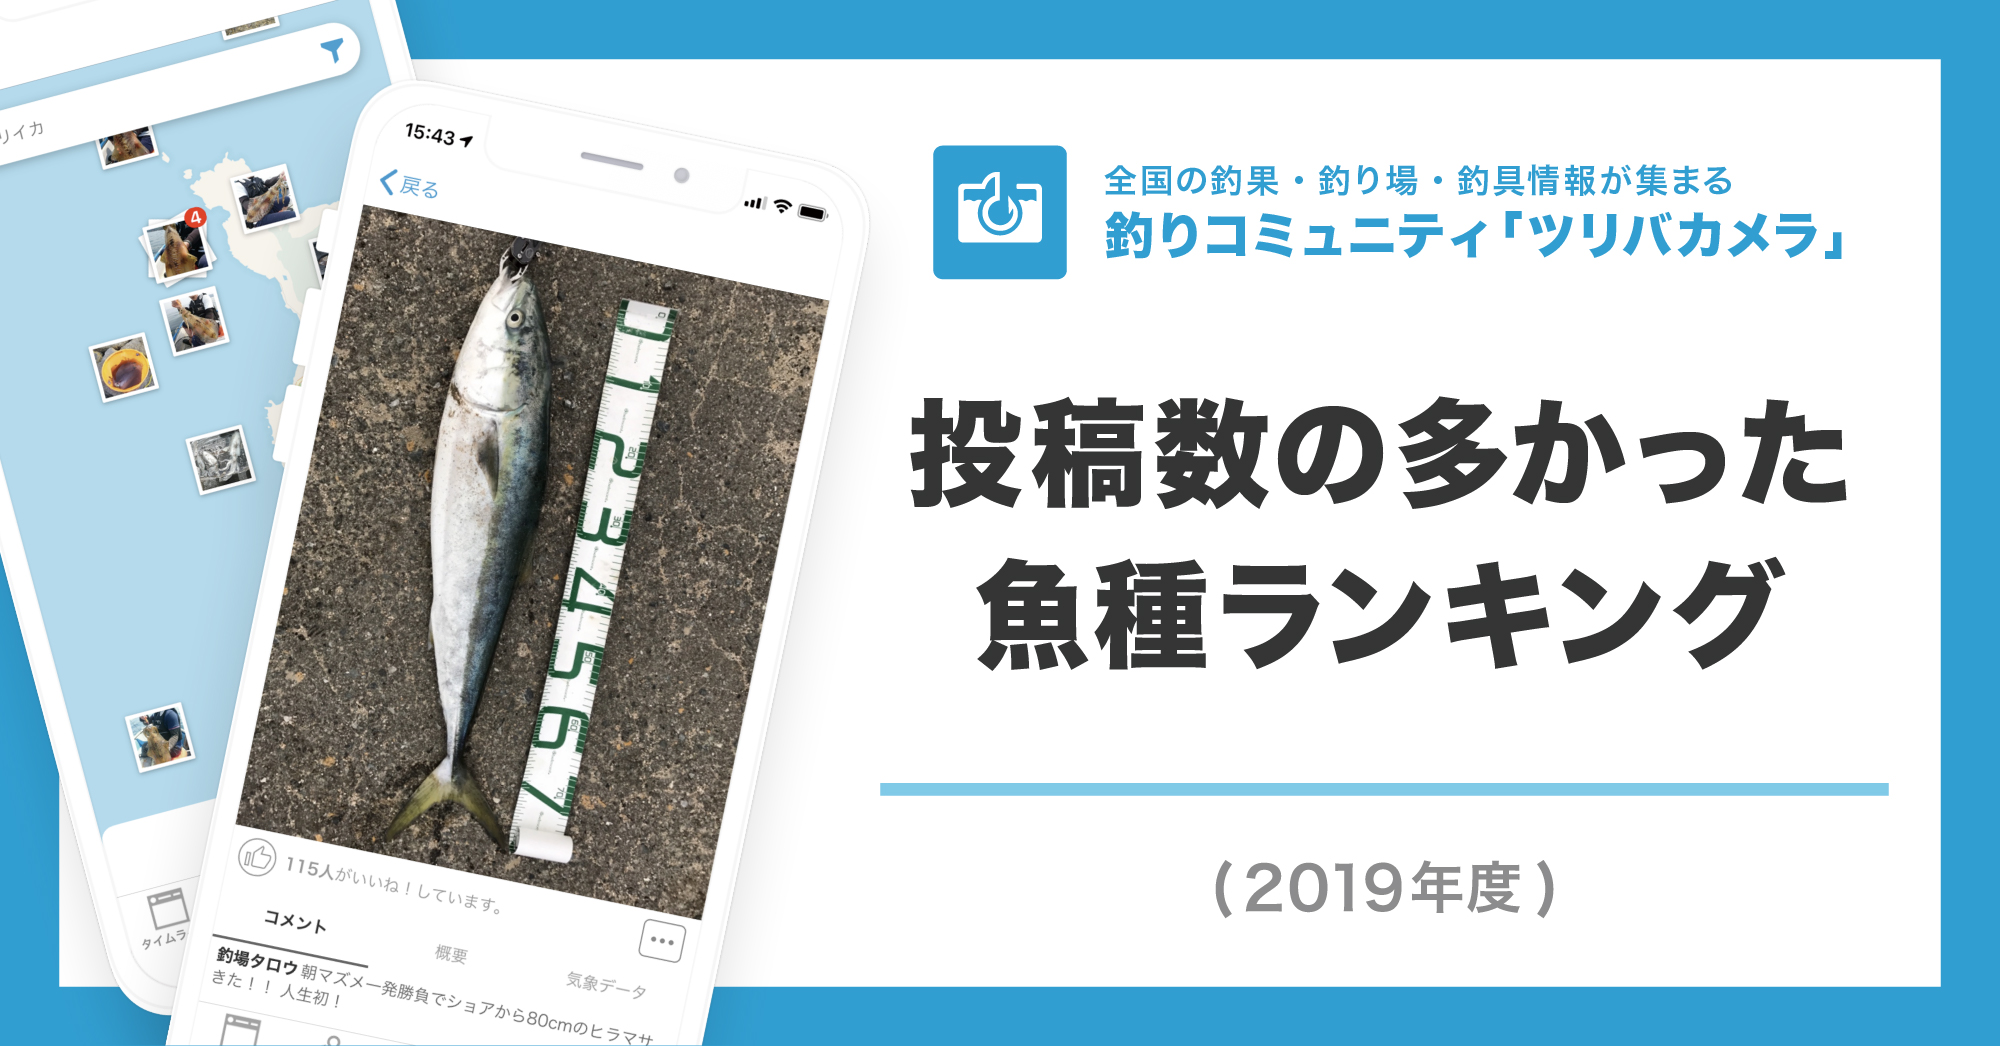 19年に一番釣られた魚は スズキ シーバス ウミーベ株式会社が釣りコミュニティサービス ツリバカメラ の19年魚種ランキング を発表 ウミーべ株式会社のプレスリリース